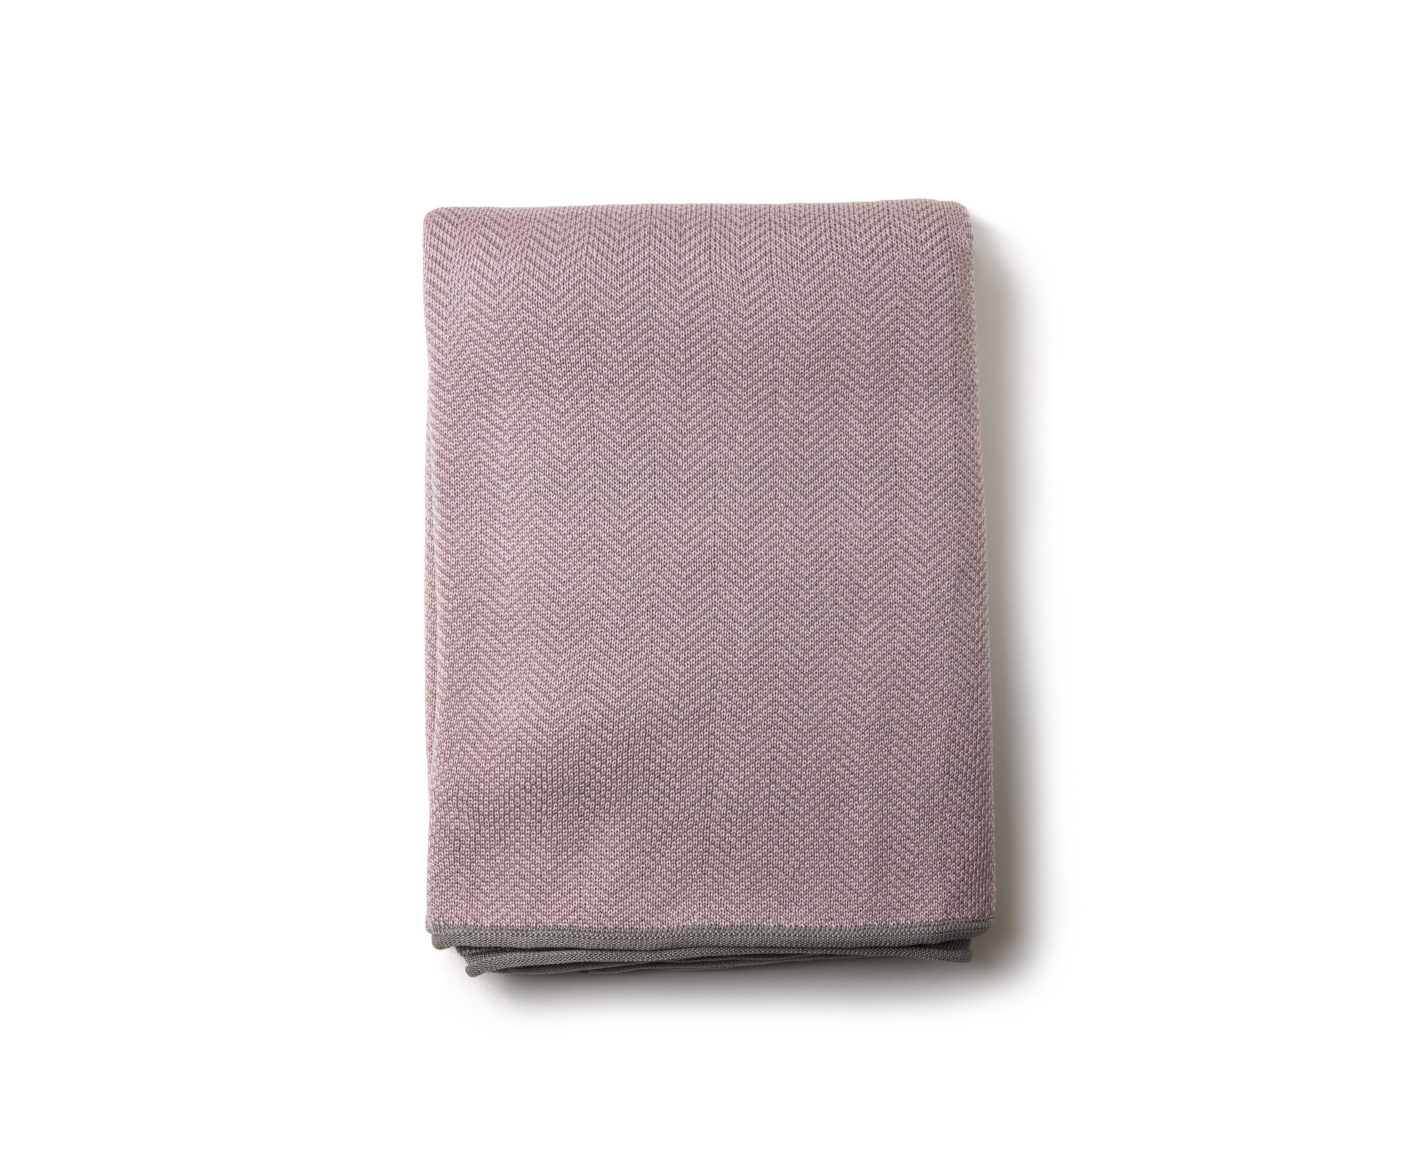 South Decke, pink / grey